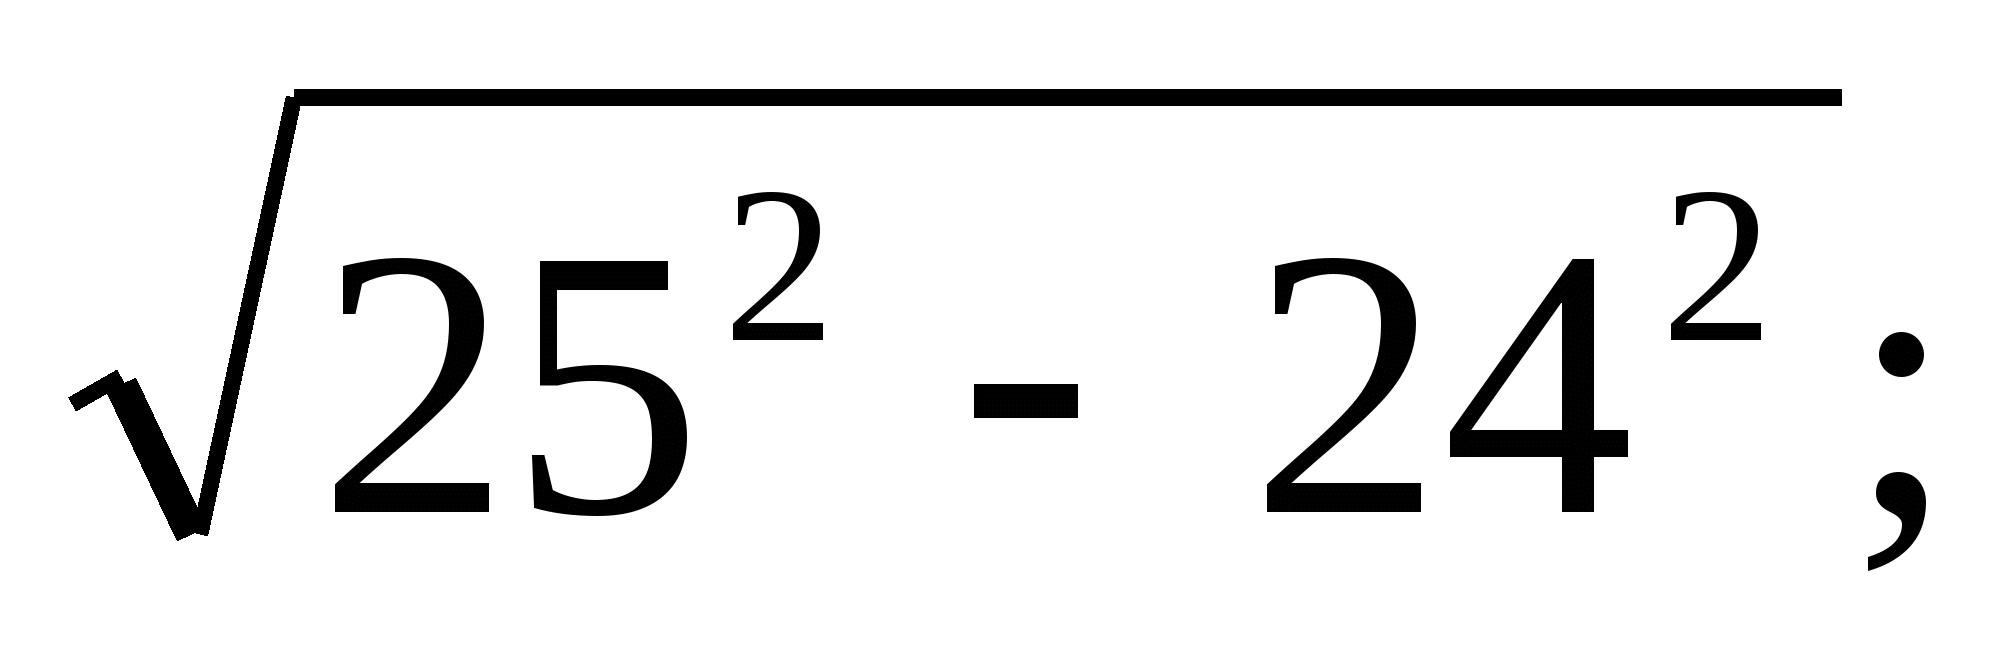 Сабақ жоспары арифметикалық квадрат түбірдің қасиеттері